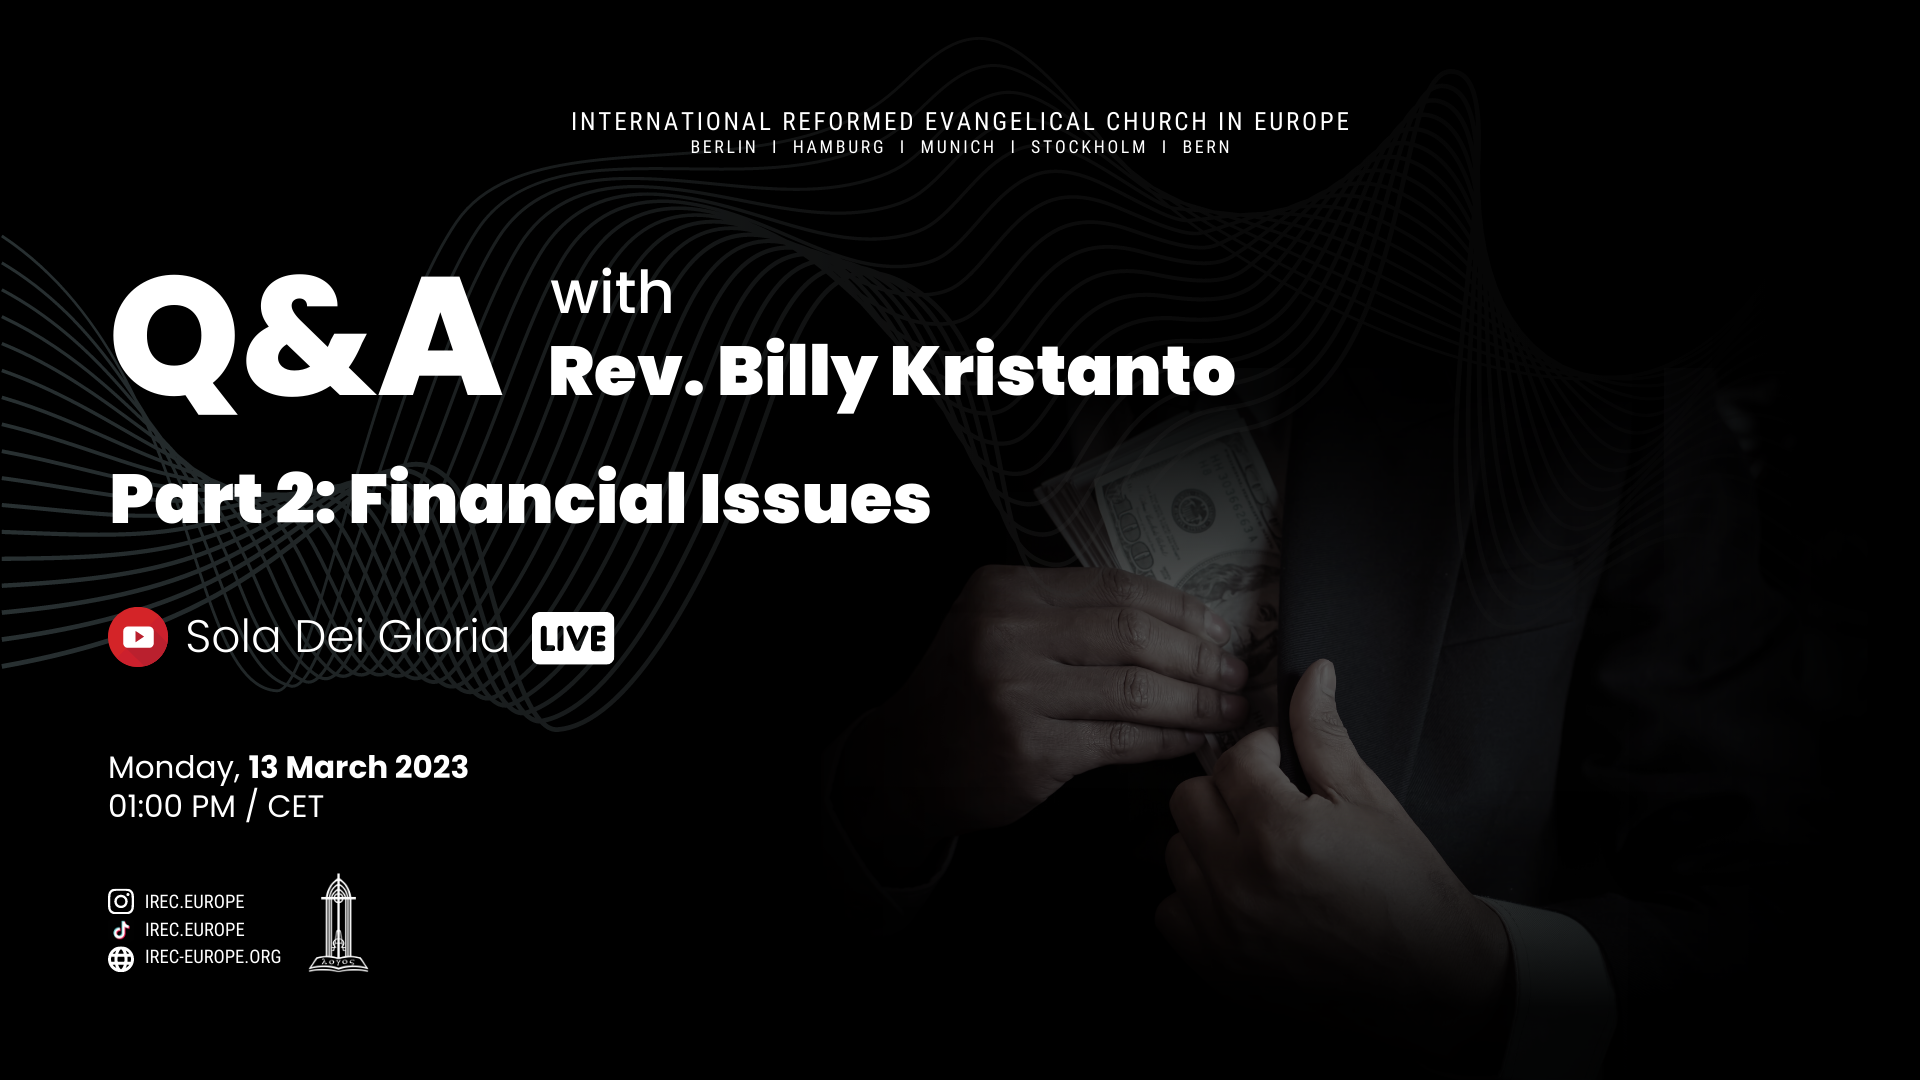 Q&A: Financial Issues Part 2